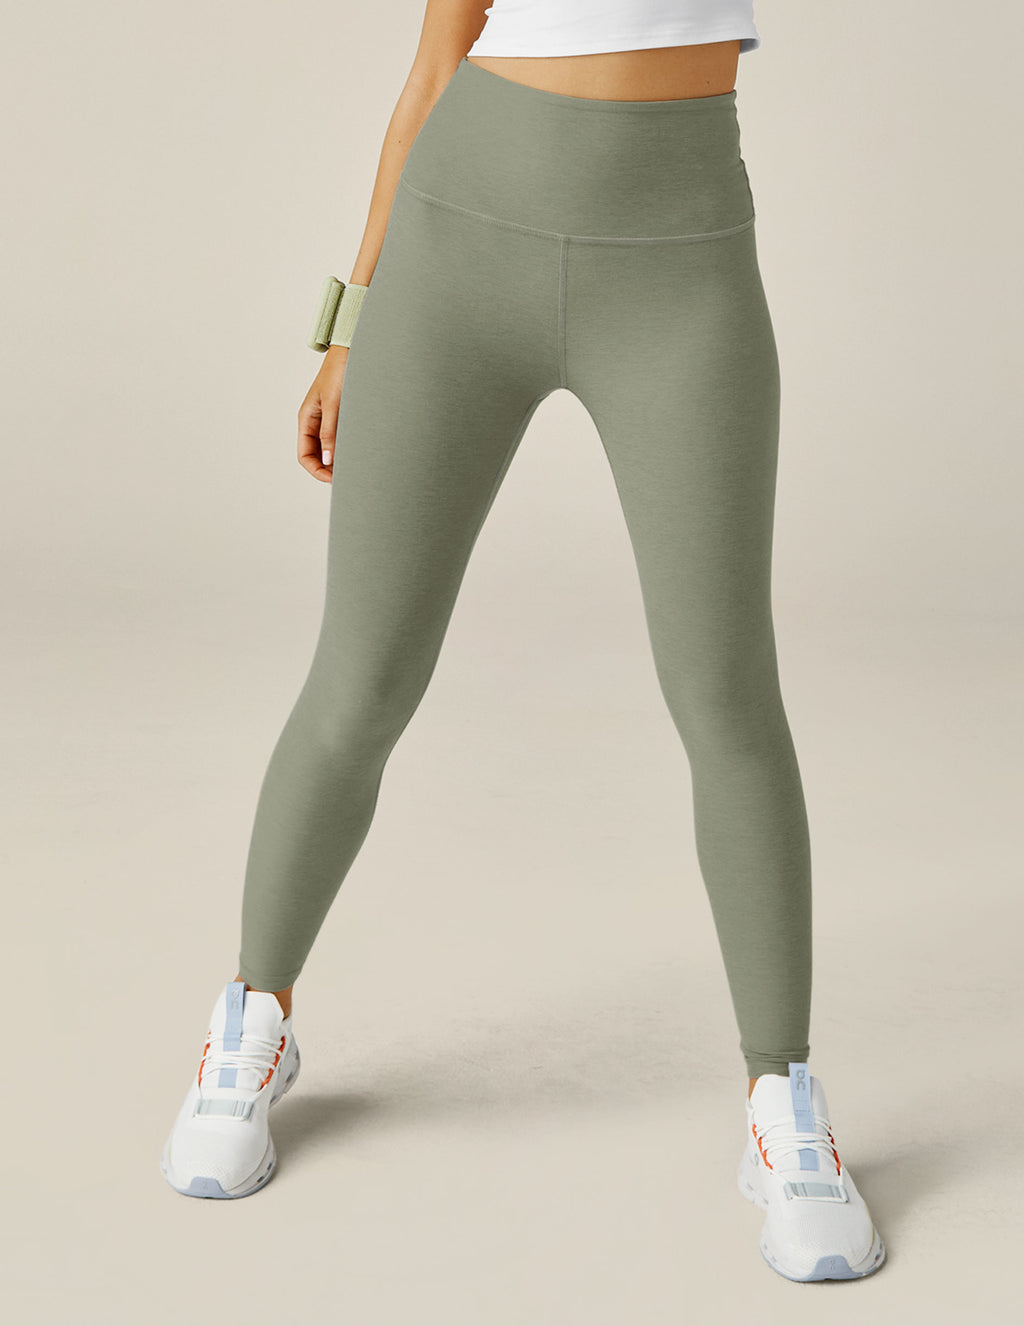 Nike Pro 365 High Rise 7/8 Leggings High Waisted Gray Leggings - Trendyol